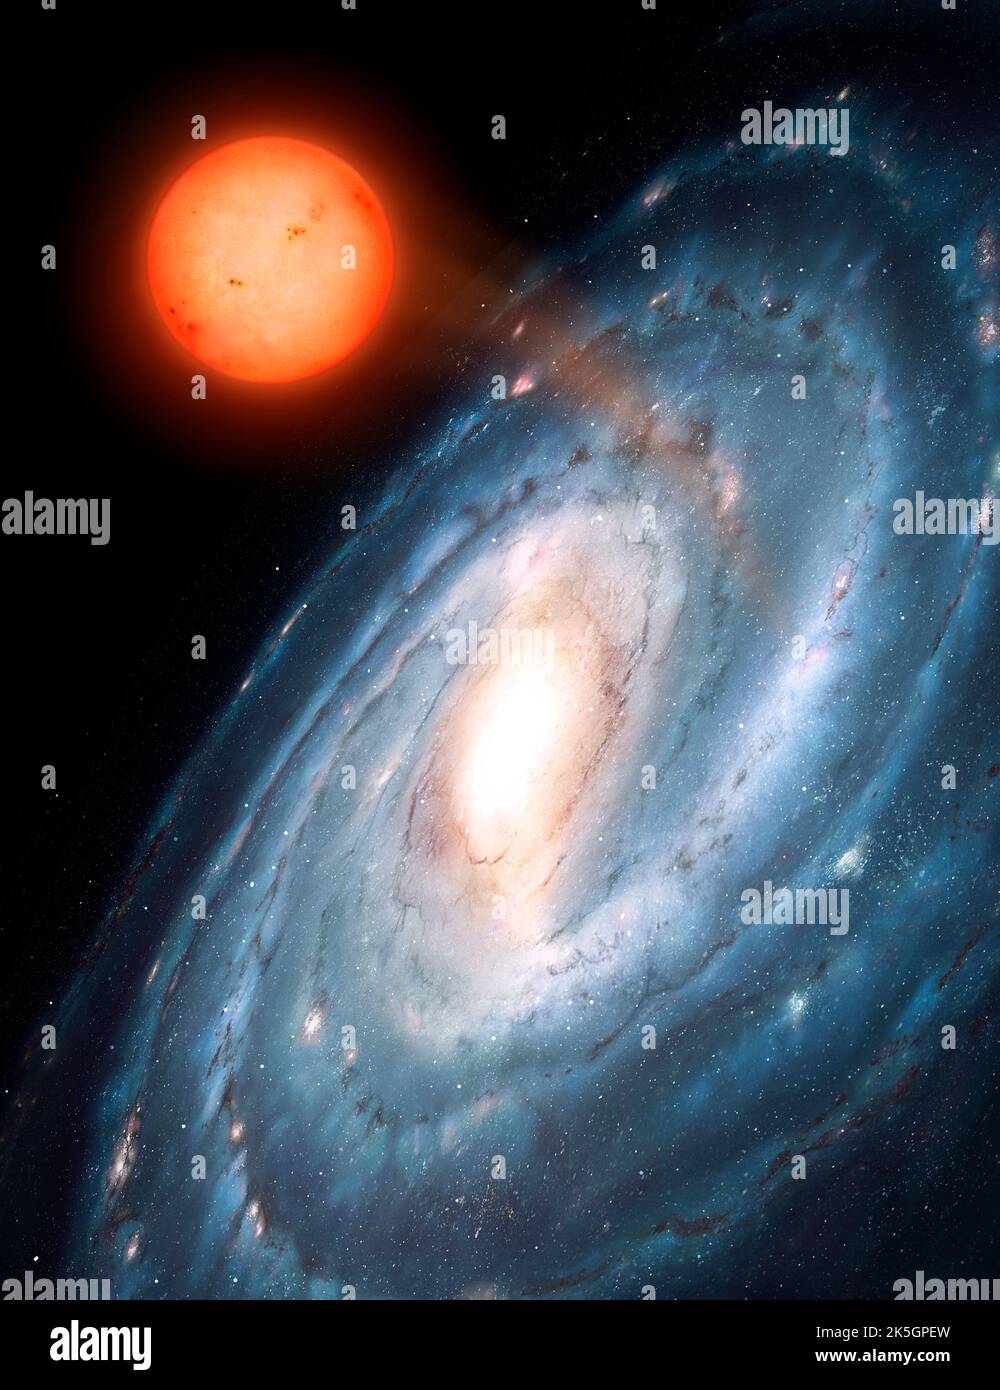 Questo mostra un'ipotetica galassia a spirale vista da un angolo obliquo. Una stella nana rossa è stata espulsa dalla galassia ad alta velocità e vagherà il vuoto tra le galassie. Tali oggetti sono noti come stelle libere-fluttuanti. Foto Stock